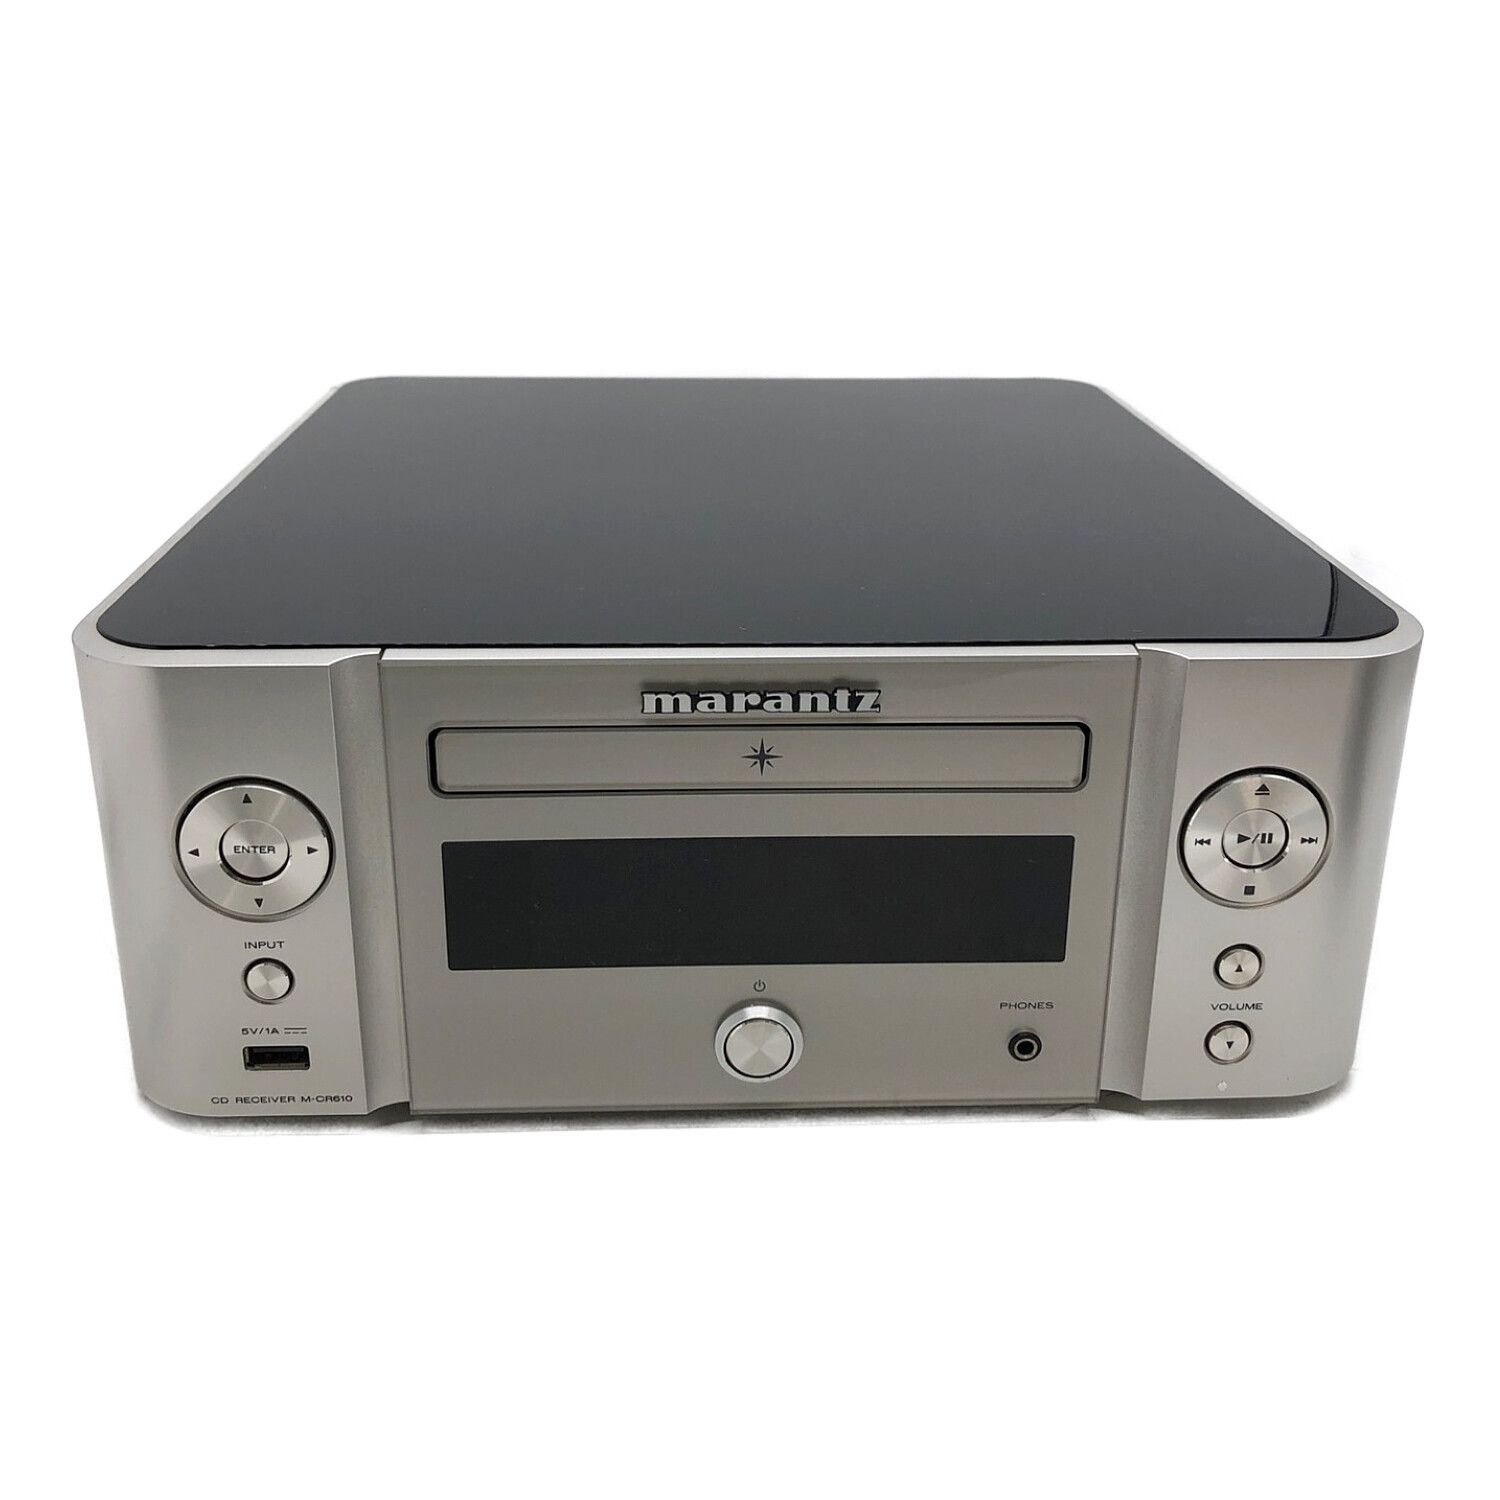 MARANTZ (マランツ) ネットワークCDレシーバー CD/FM/AM/USB M-CR610